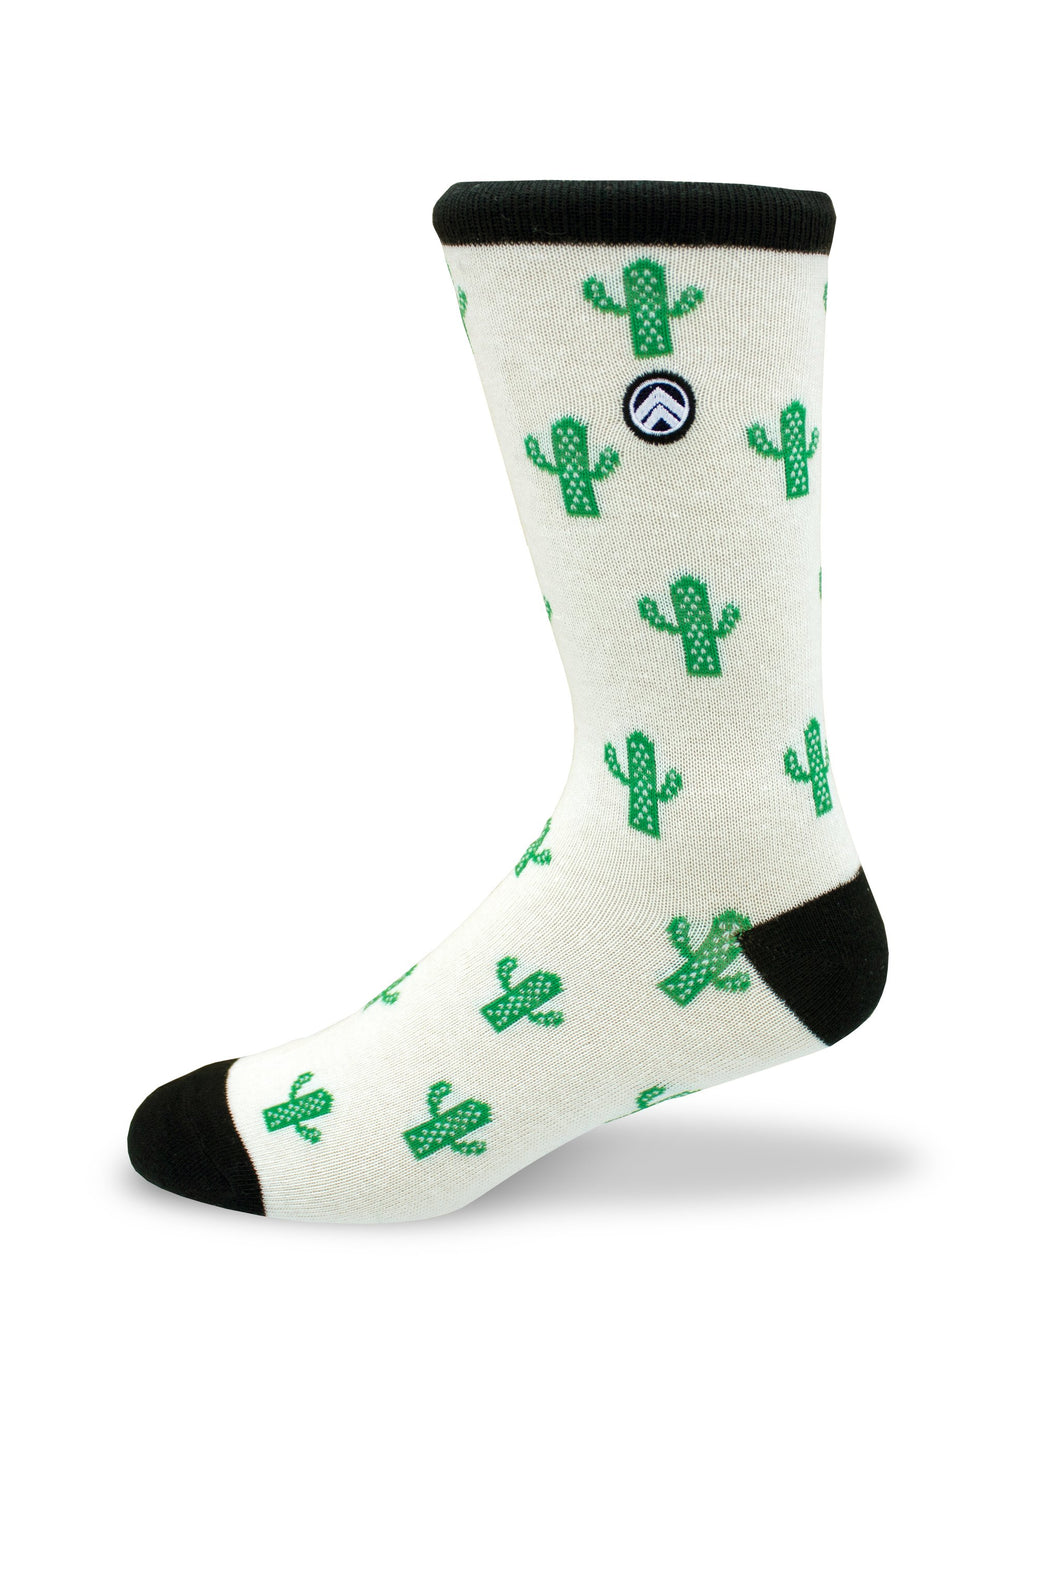 Sky Footwear Socks, Cactus